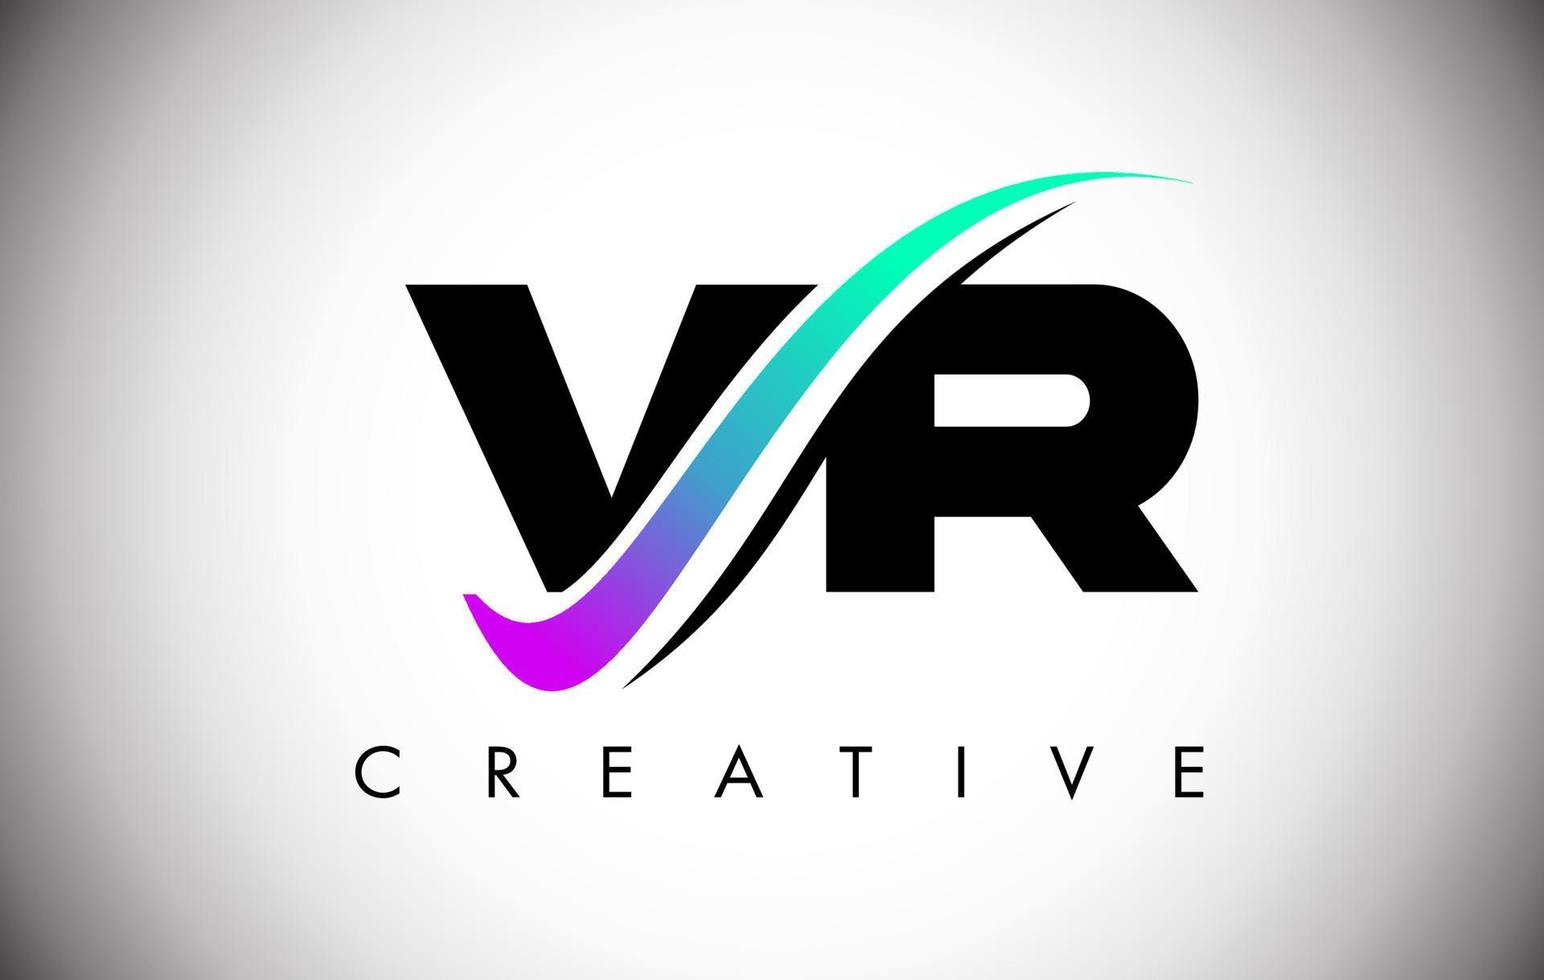 Logotipo da carta vr com linha curva swoosh criativo e fonte em negrito e cores vibrantes vetor